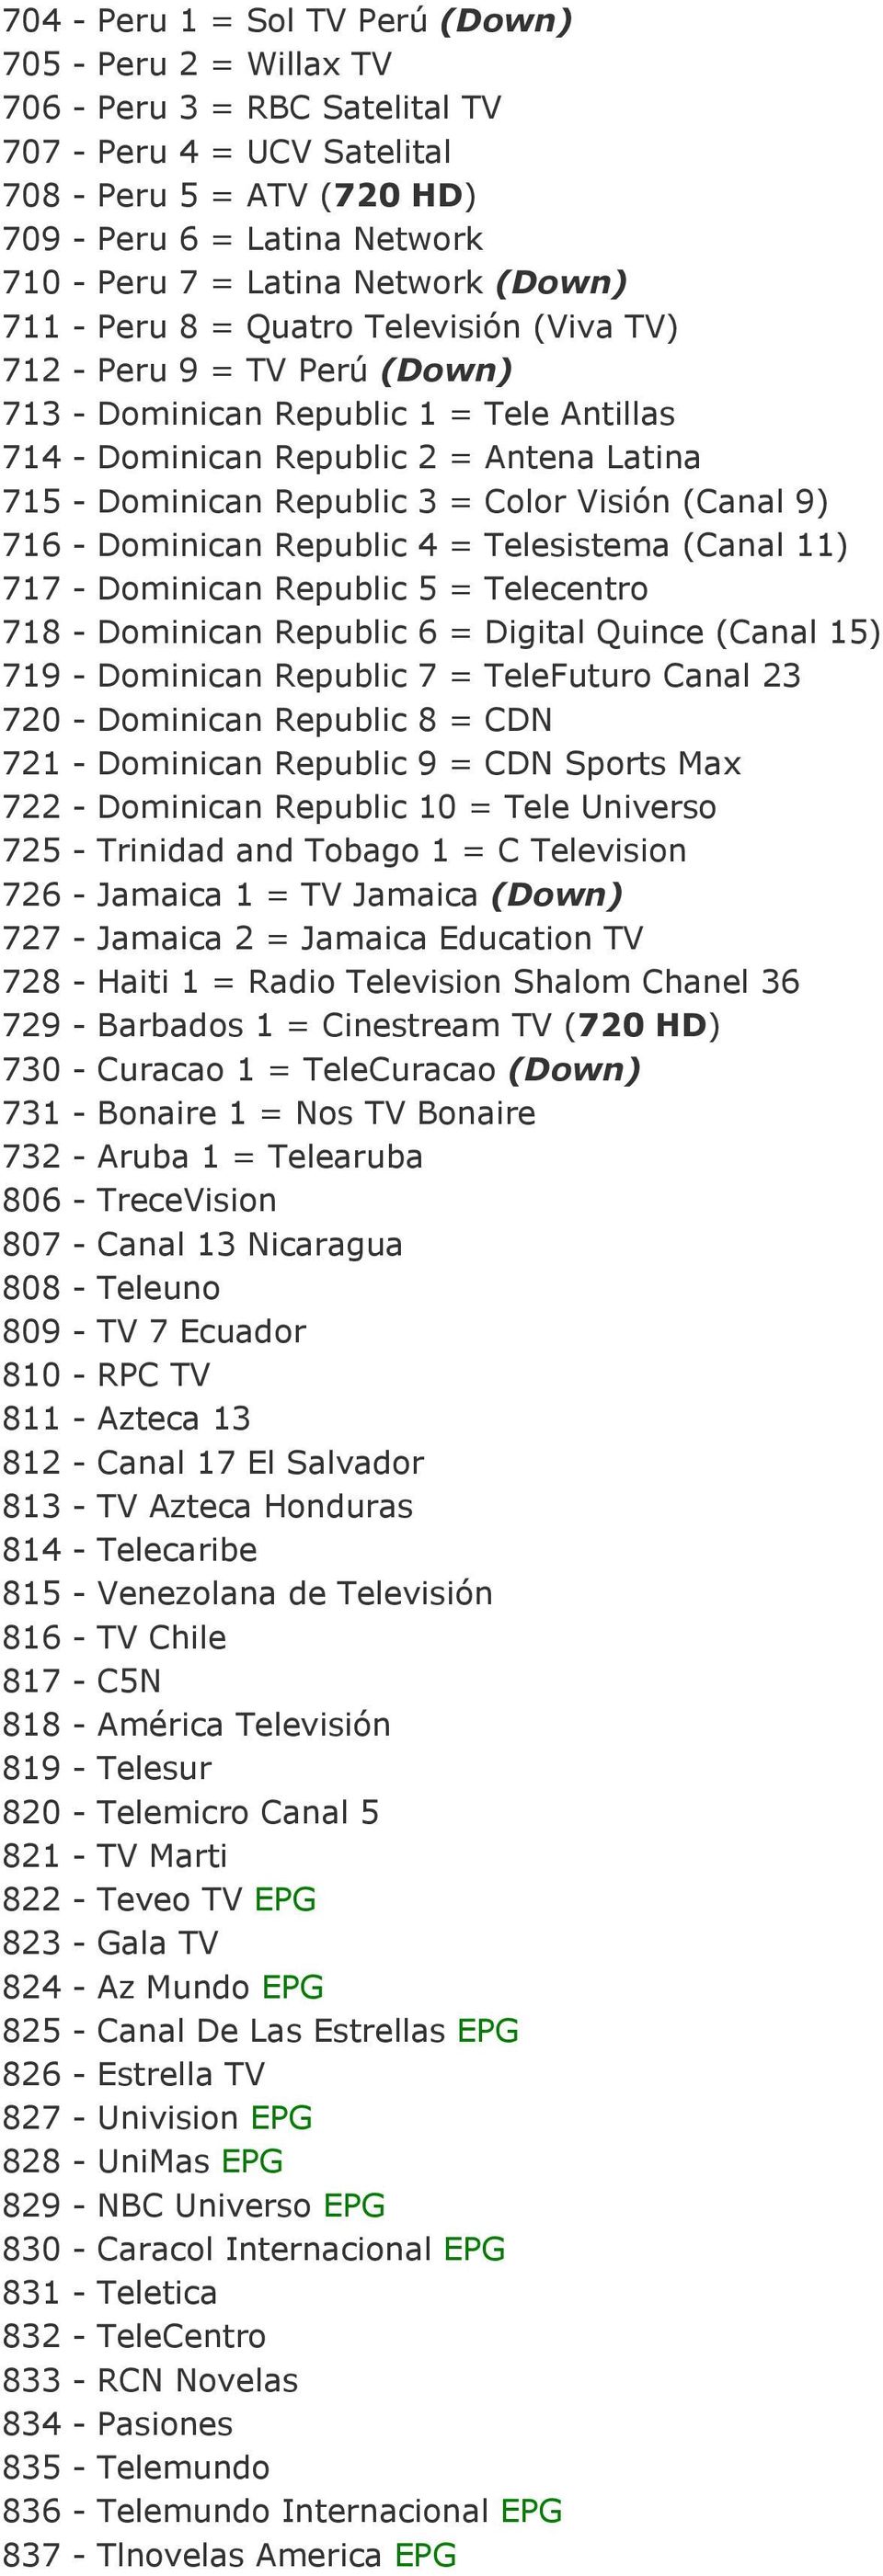 3 = Color Visión (Canal 9) 716 - Dominican Republic 4 = Telesistema (Canal 11) 717 - Dominican Republic 5 = Telecentro 718 - Dominican Republic 6 = Digital Quince (Canal 15) 719 - Dominican Republic